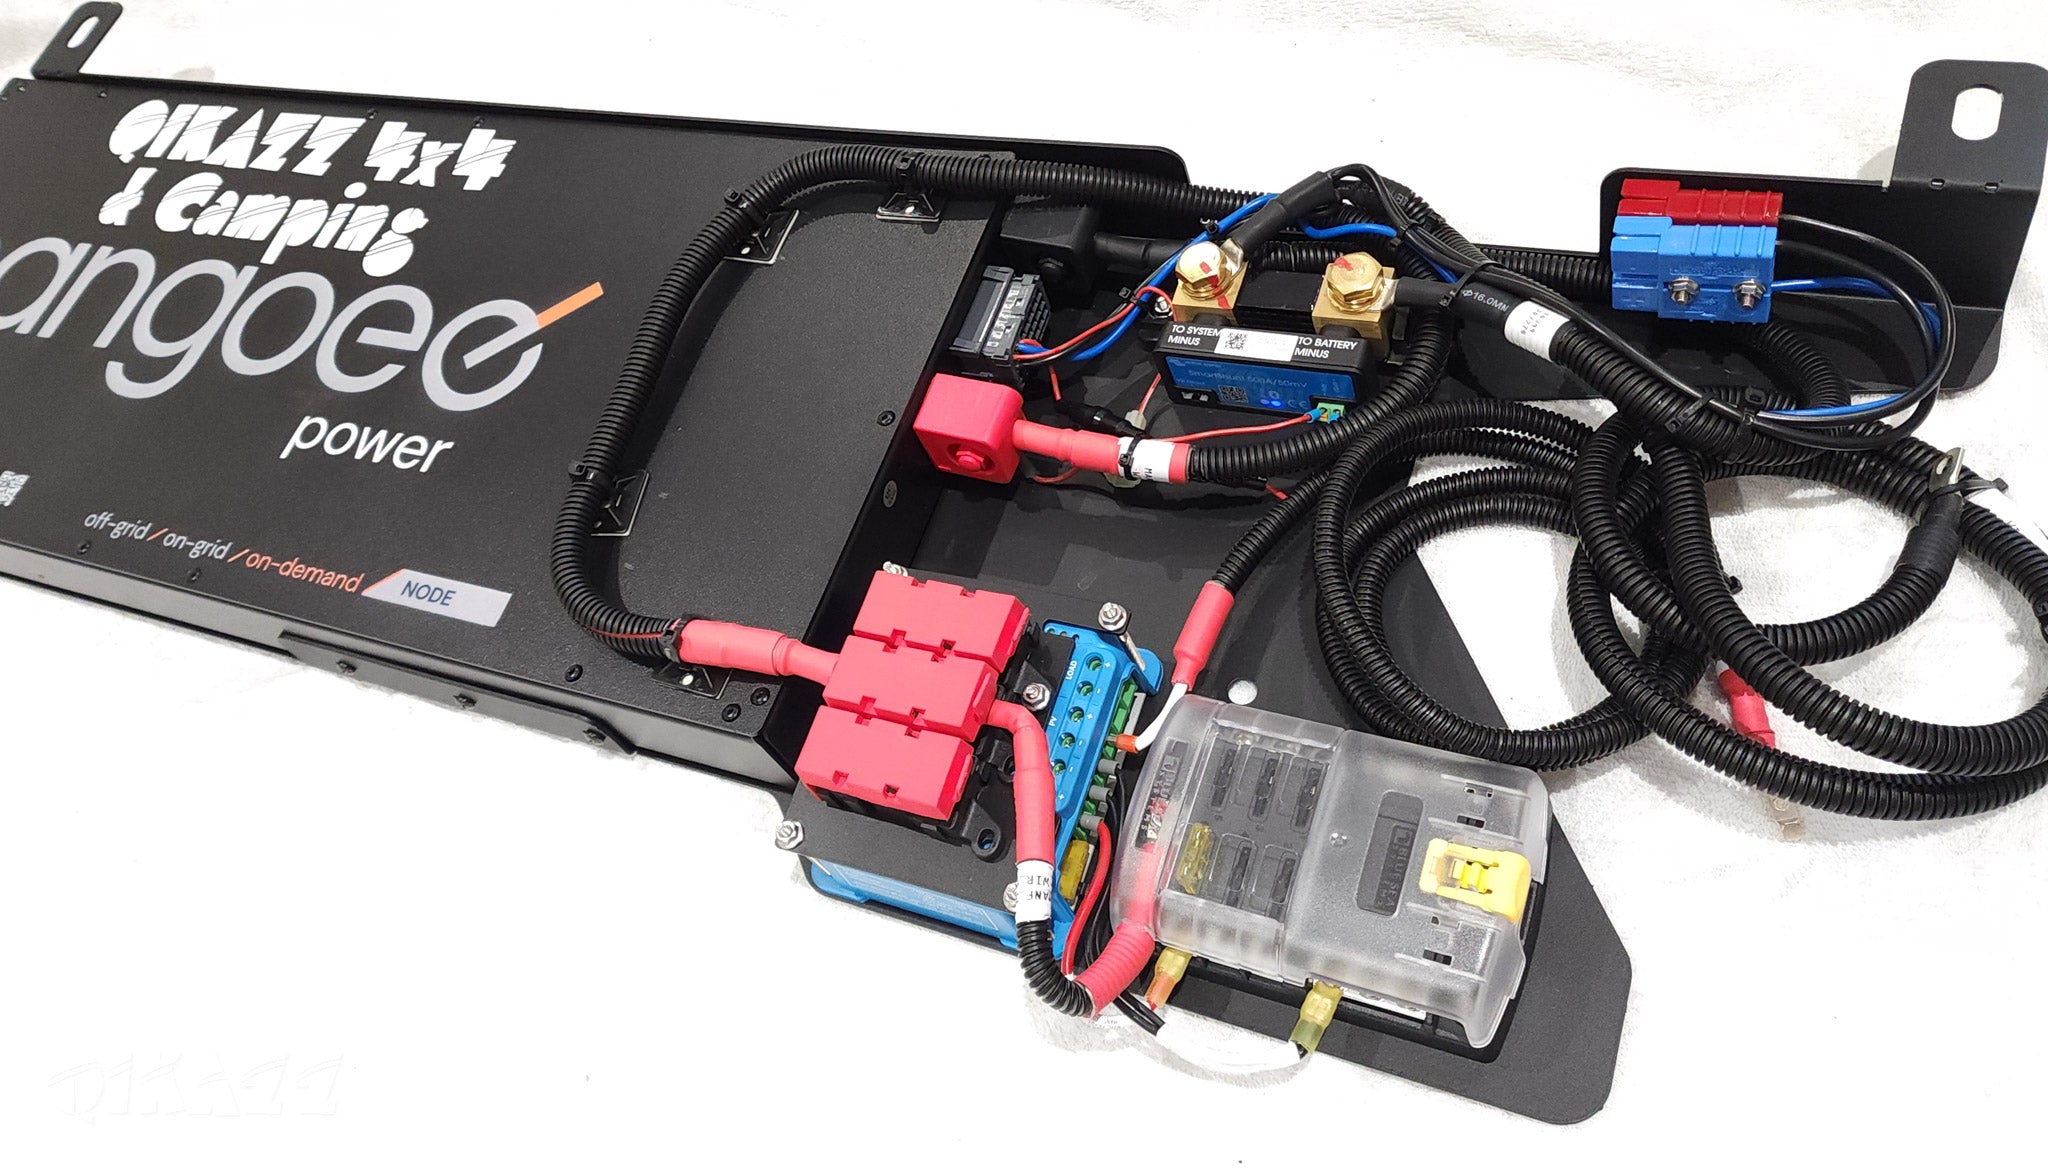 Cangoee 110AH Lithium Dual Battery DIY Kit for Nissan Patrol Y62 Under Rear Floor | Cangoee